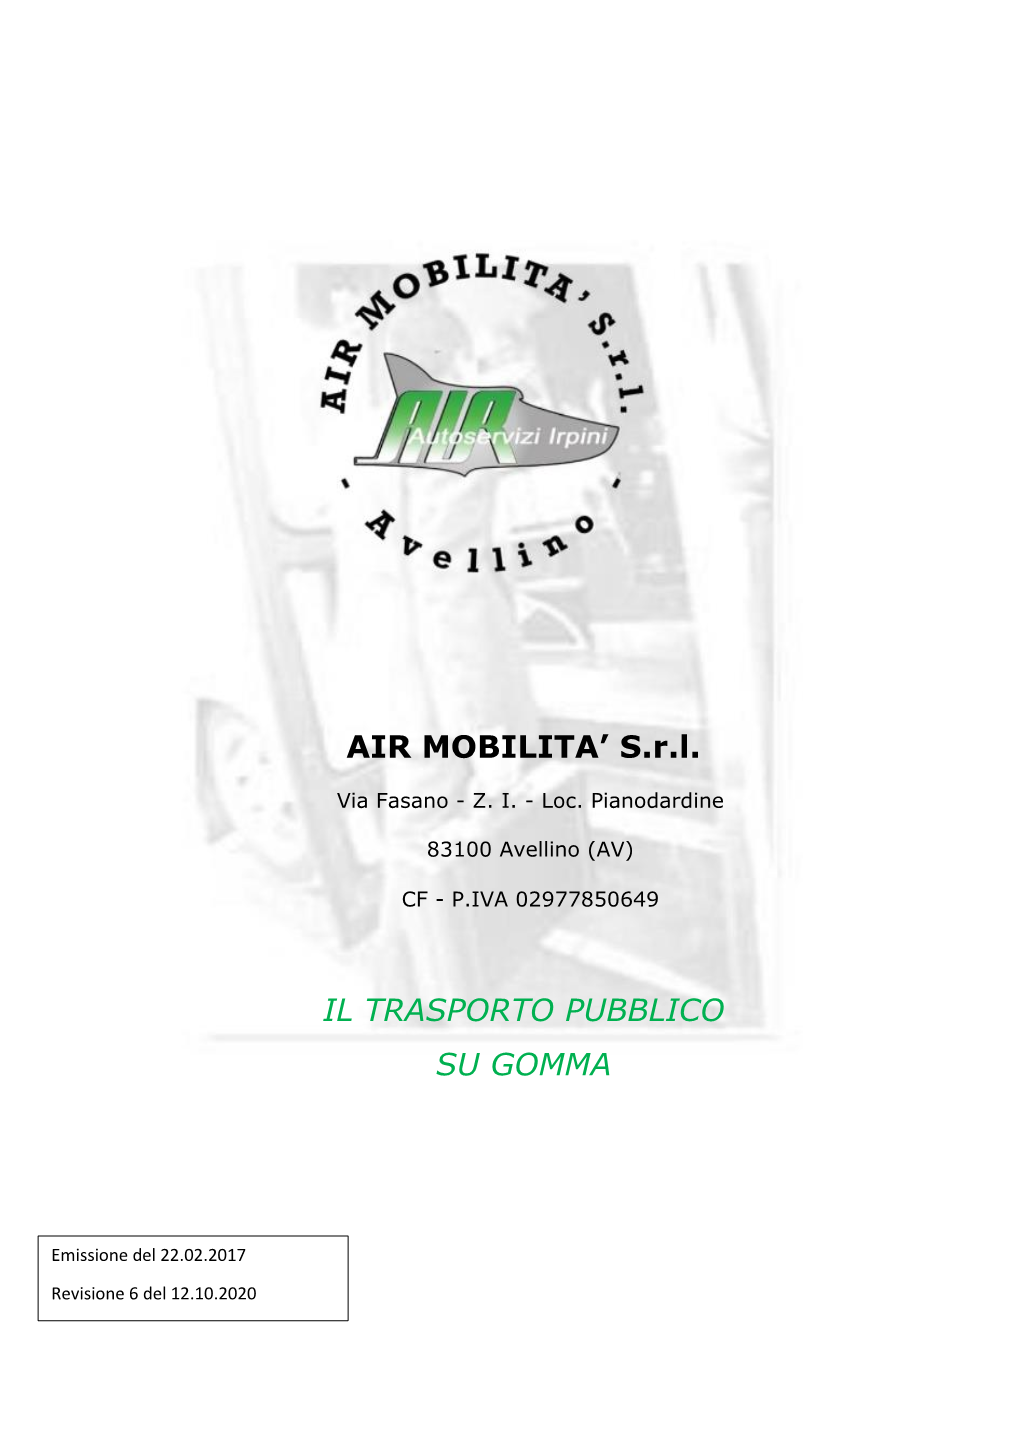 AIR MOBILITA' S.R.L. IL TRASPORTO PUBBLICO SU GOMMA